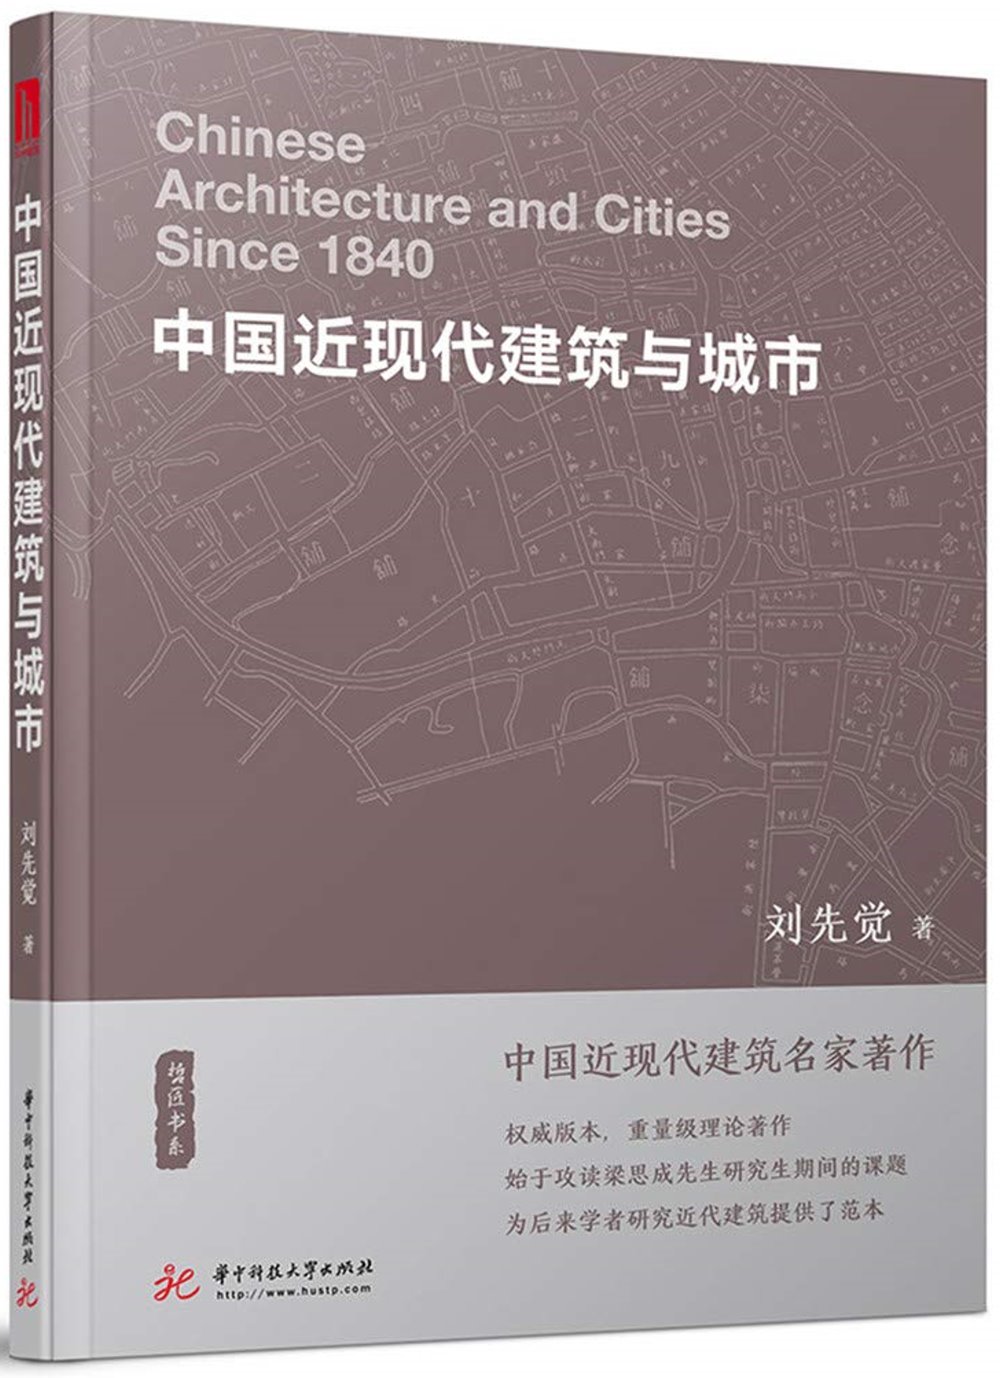 中國近現代建築與城市